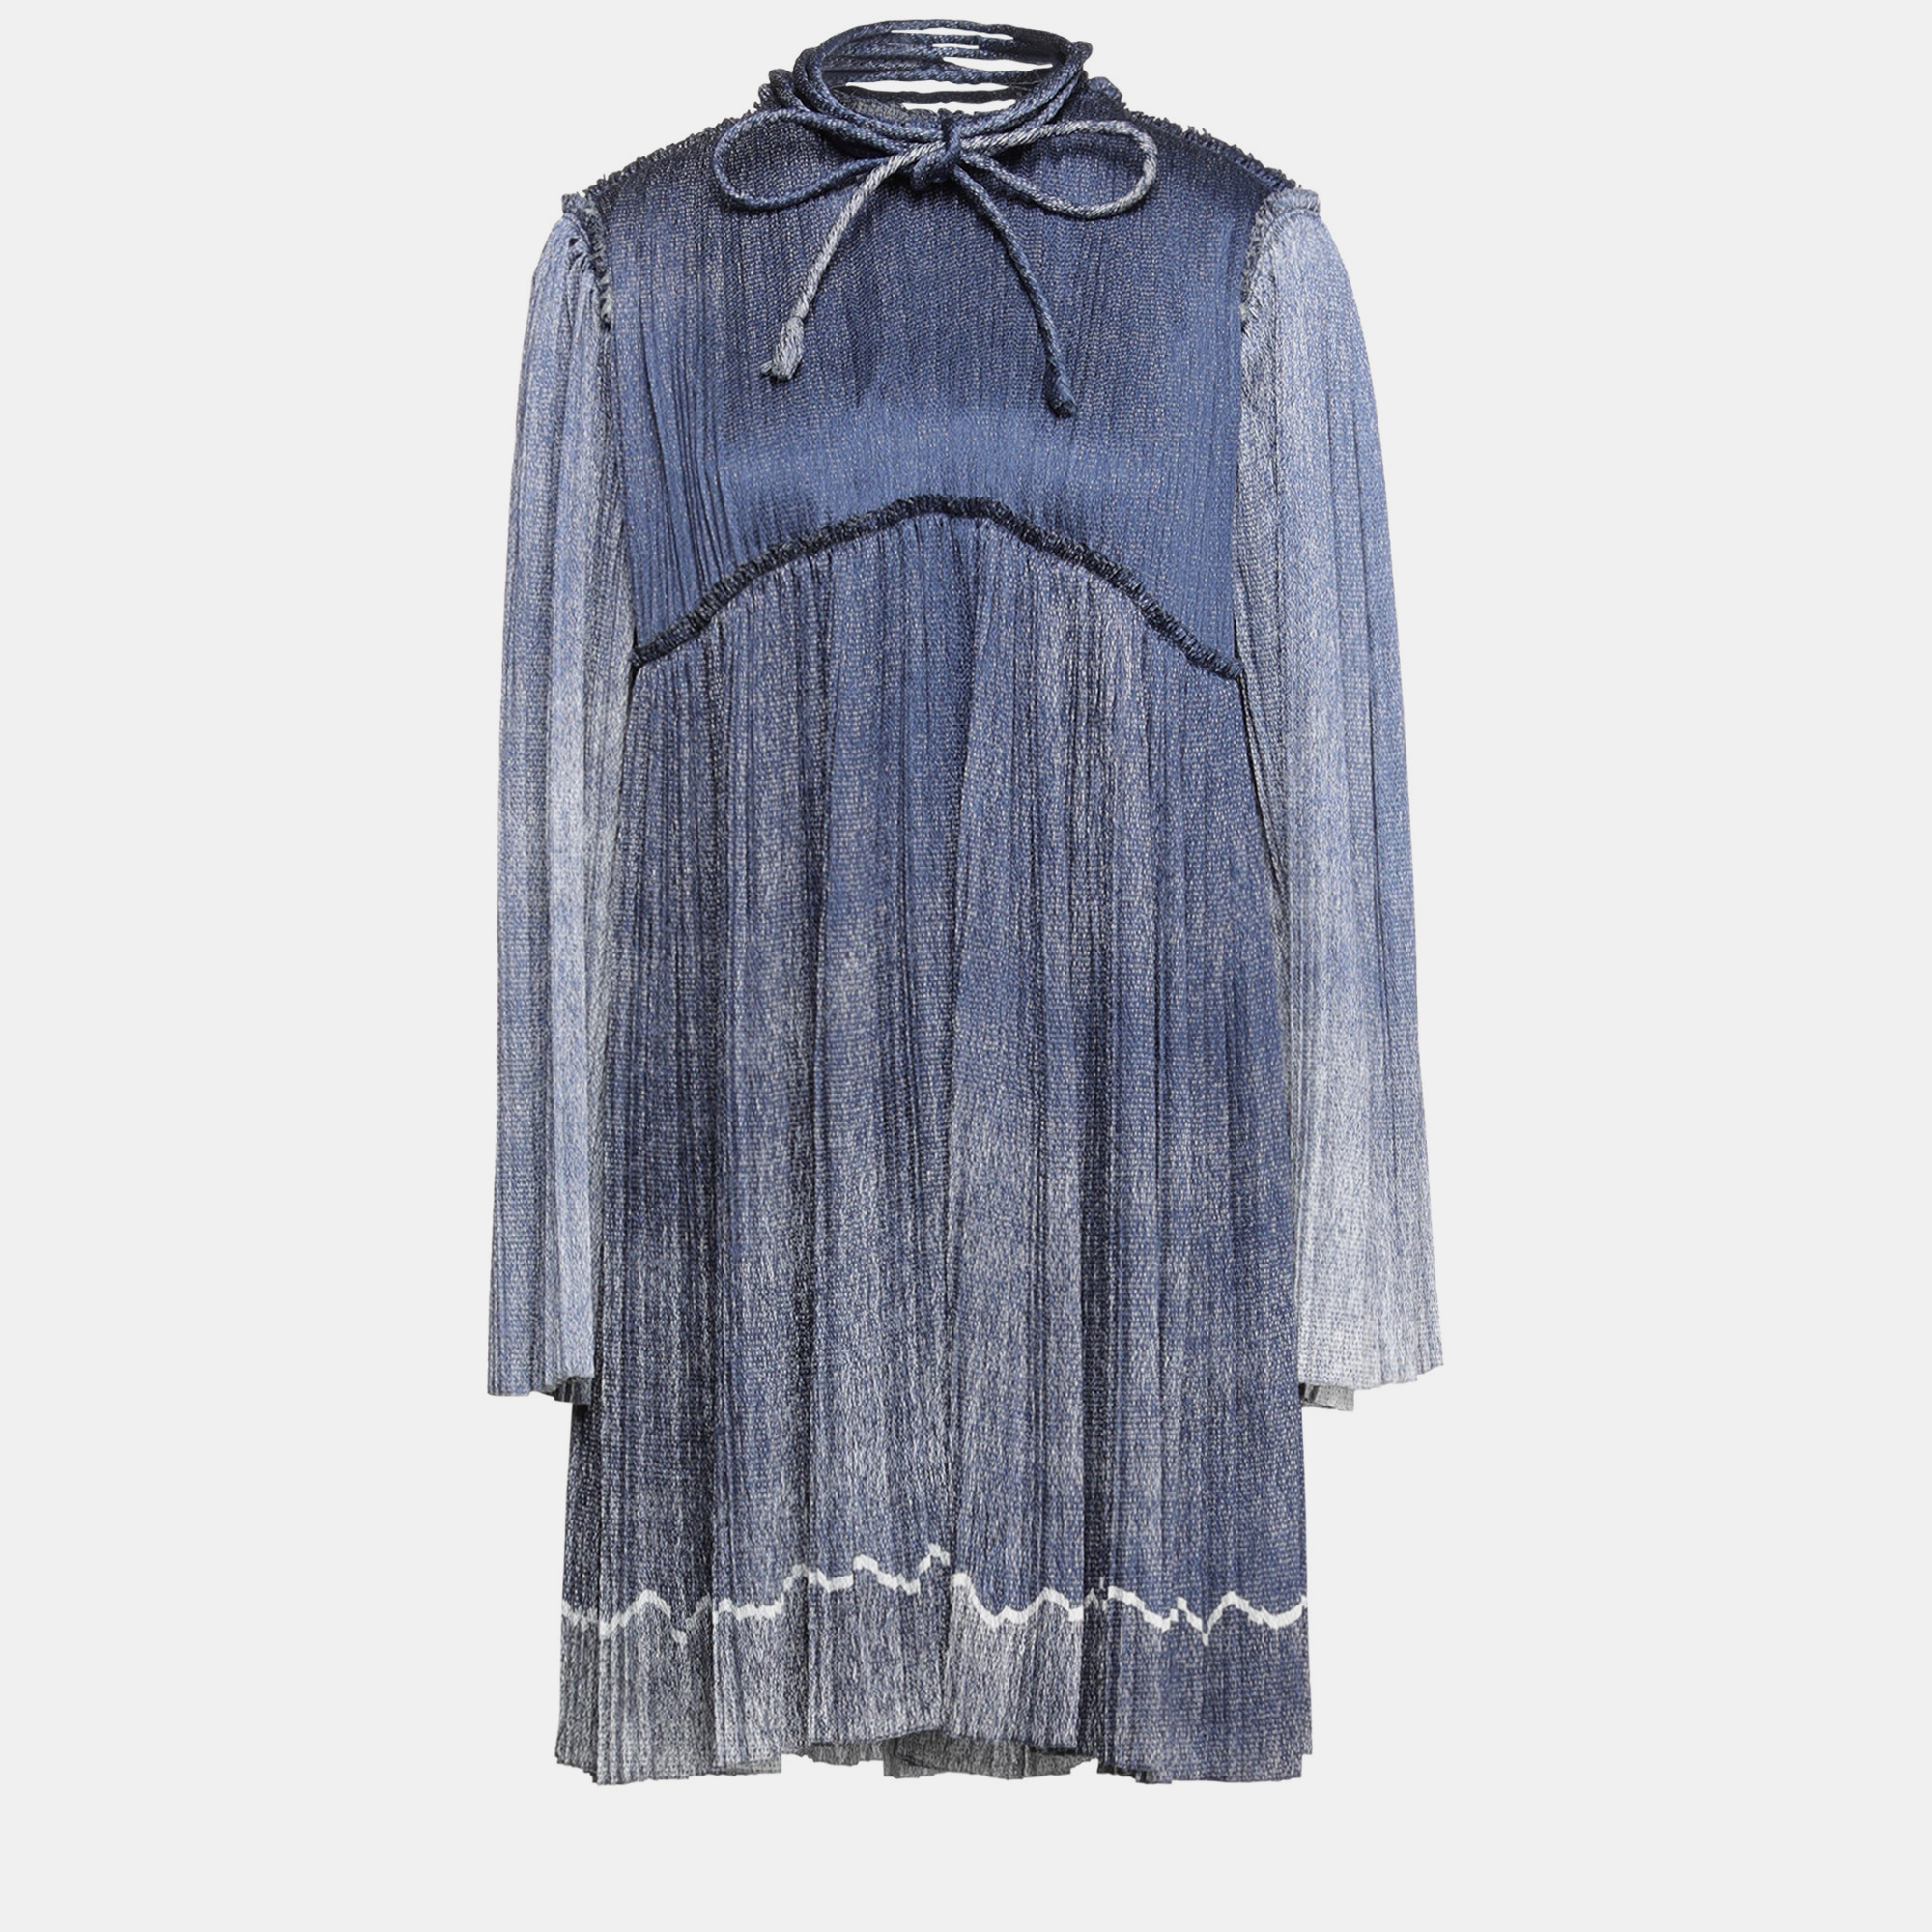 Chloe blue printed crinkled silk mini dress s (fr 36)